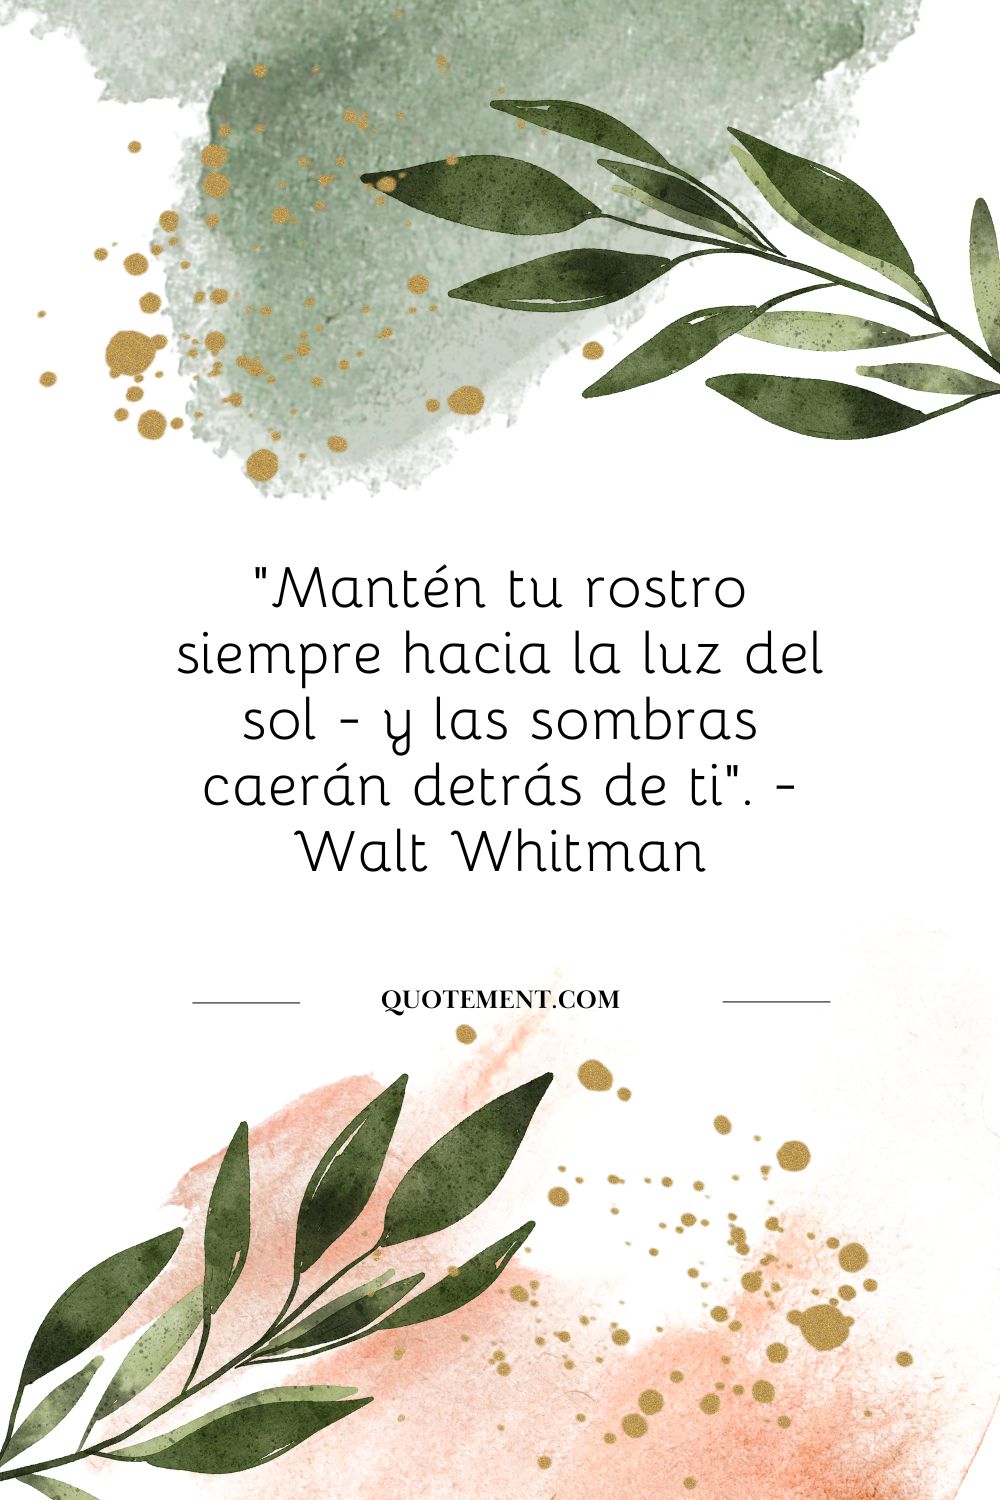 "Mantén tu rostro siempre hacia la luz del sol - y las sombras caerán detrás de ti". - Walt Whitman